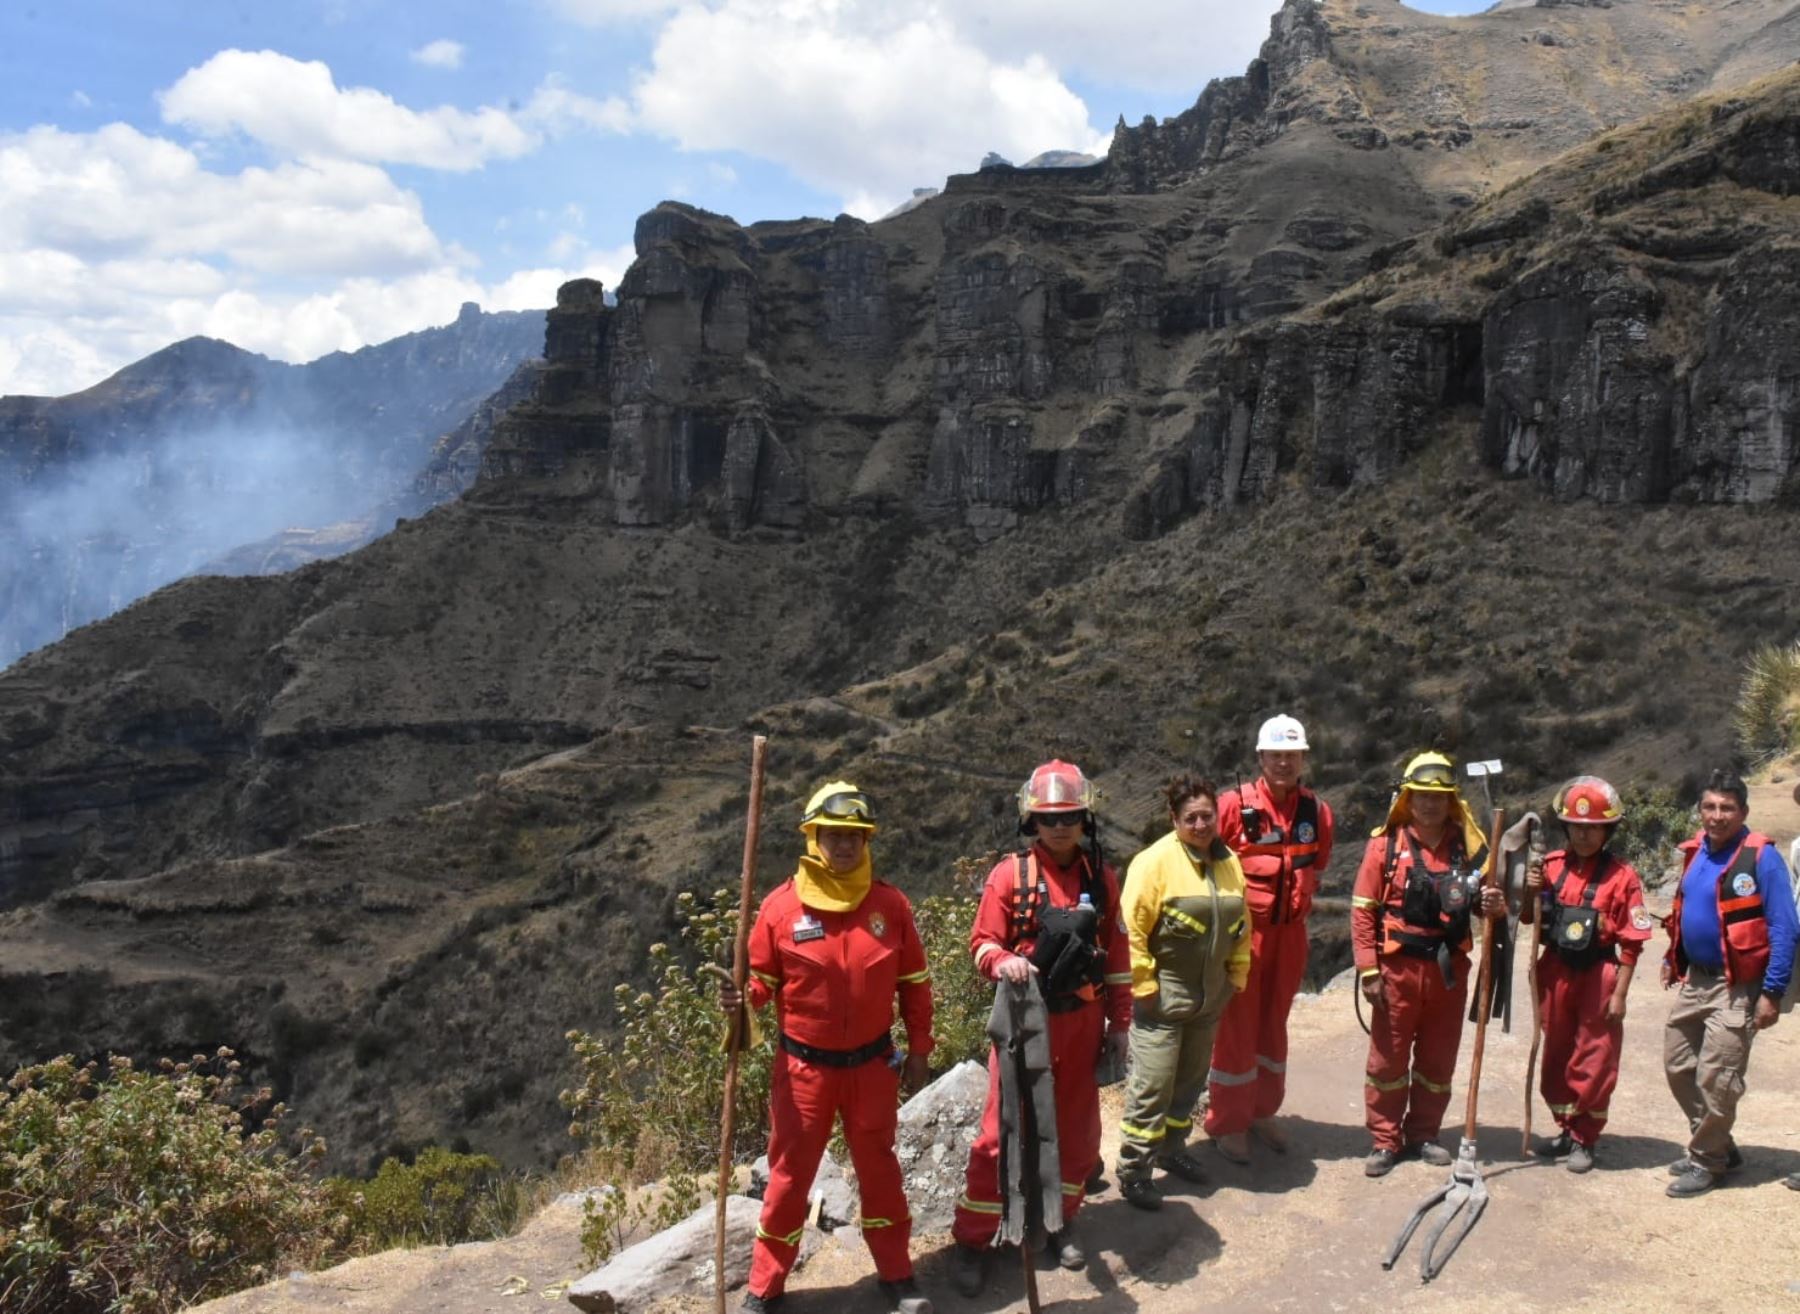 Bomberos forestales de Cusco controlaron el incendio forestal que afectaba al parque arqueológico Waqrapukara, ubicado en la provincia de Acomayo. Foto: ANDINA/difusión.